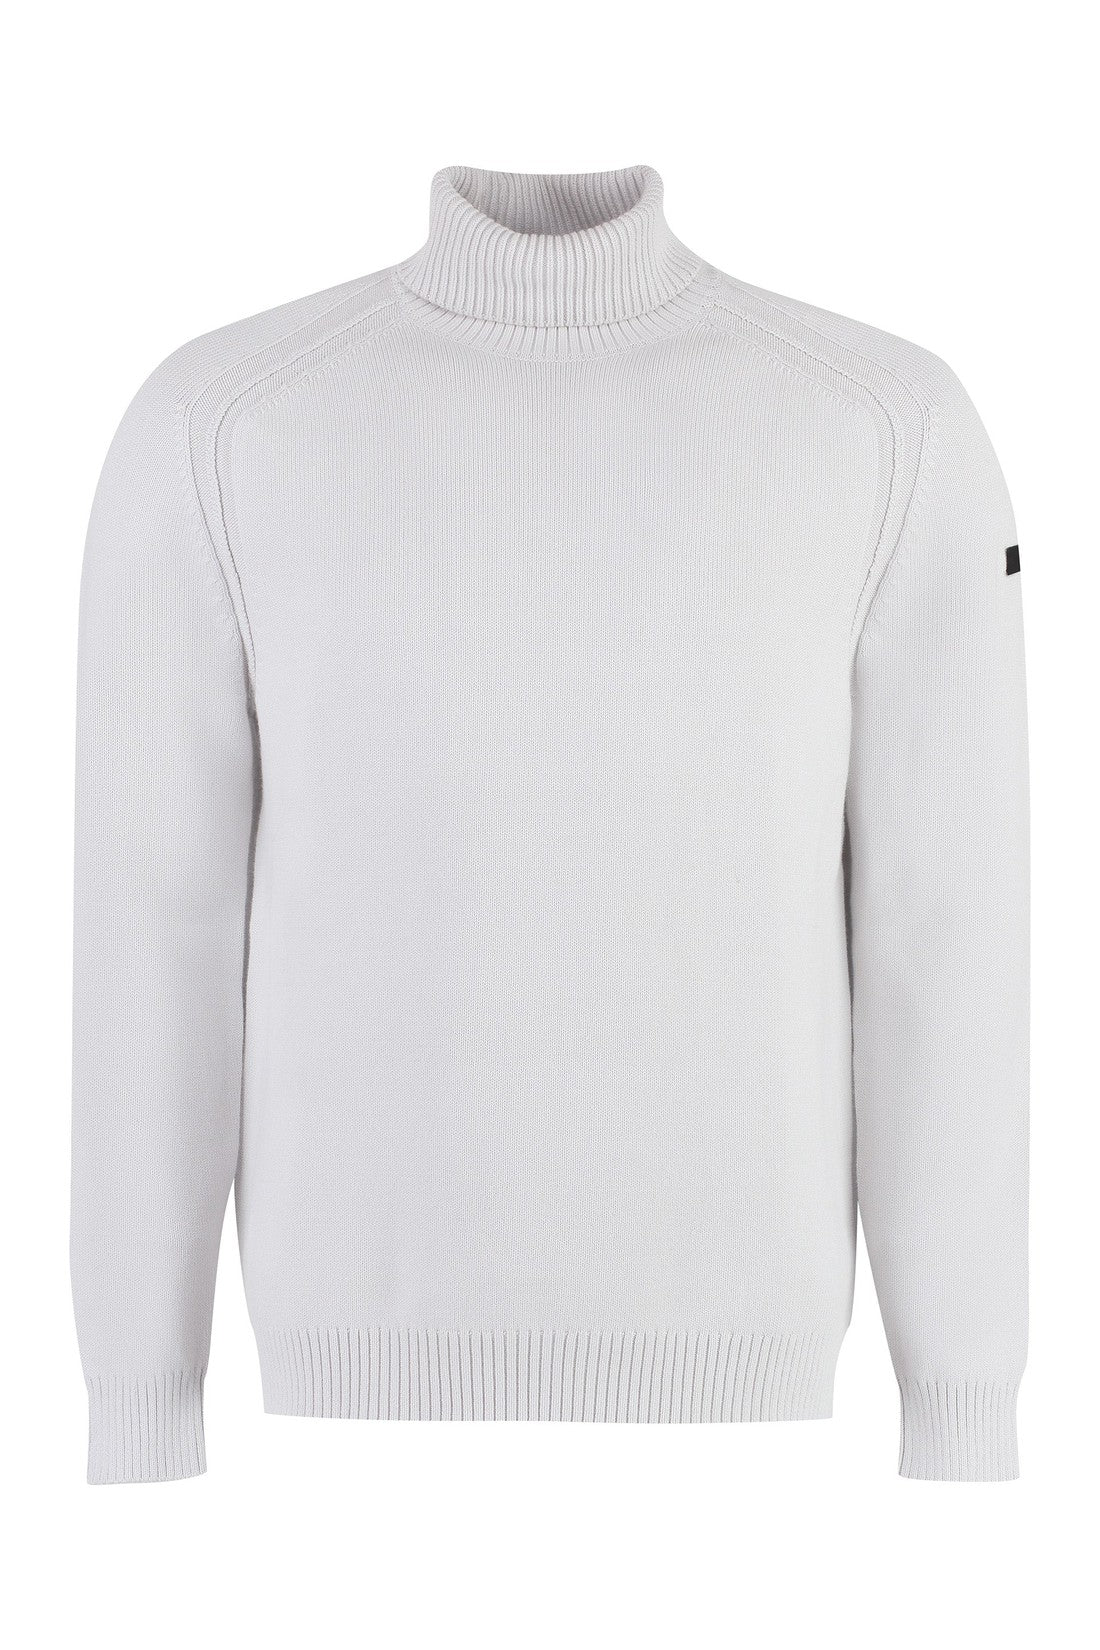 RRD-OUTLET-SALE-Cotton turtleneck sweater-ARCHIVIST